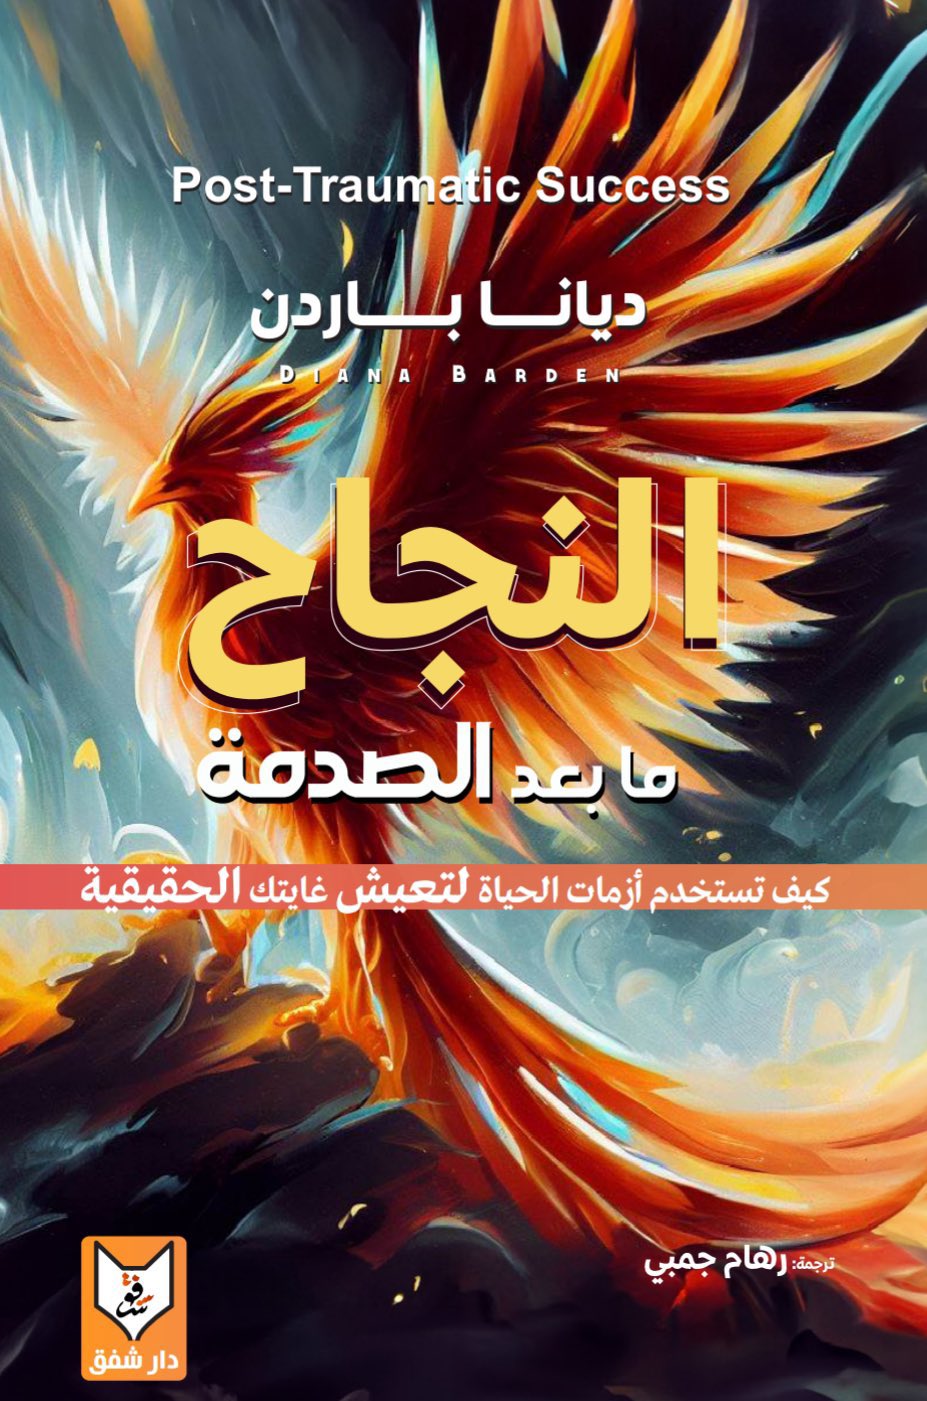 ترجمة عربية لكتاب النجاح ما بعد الصدمة